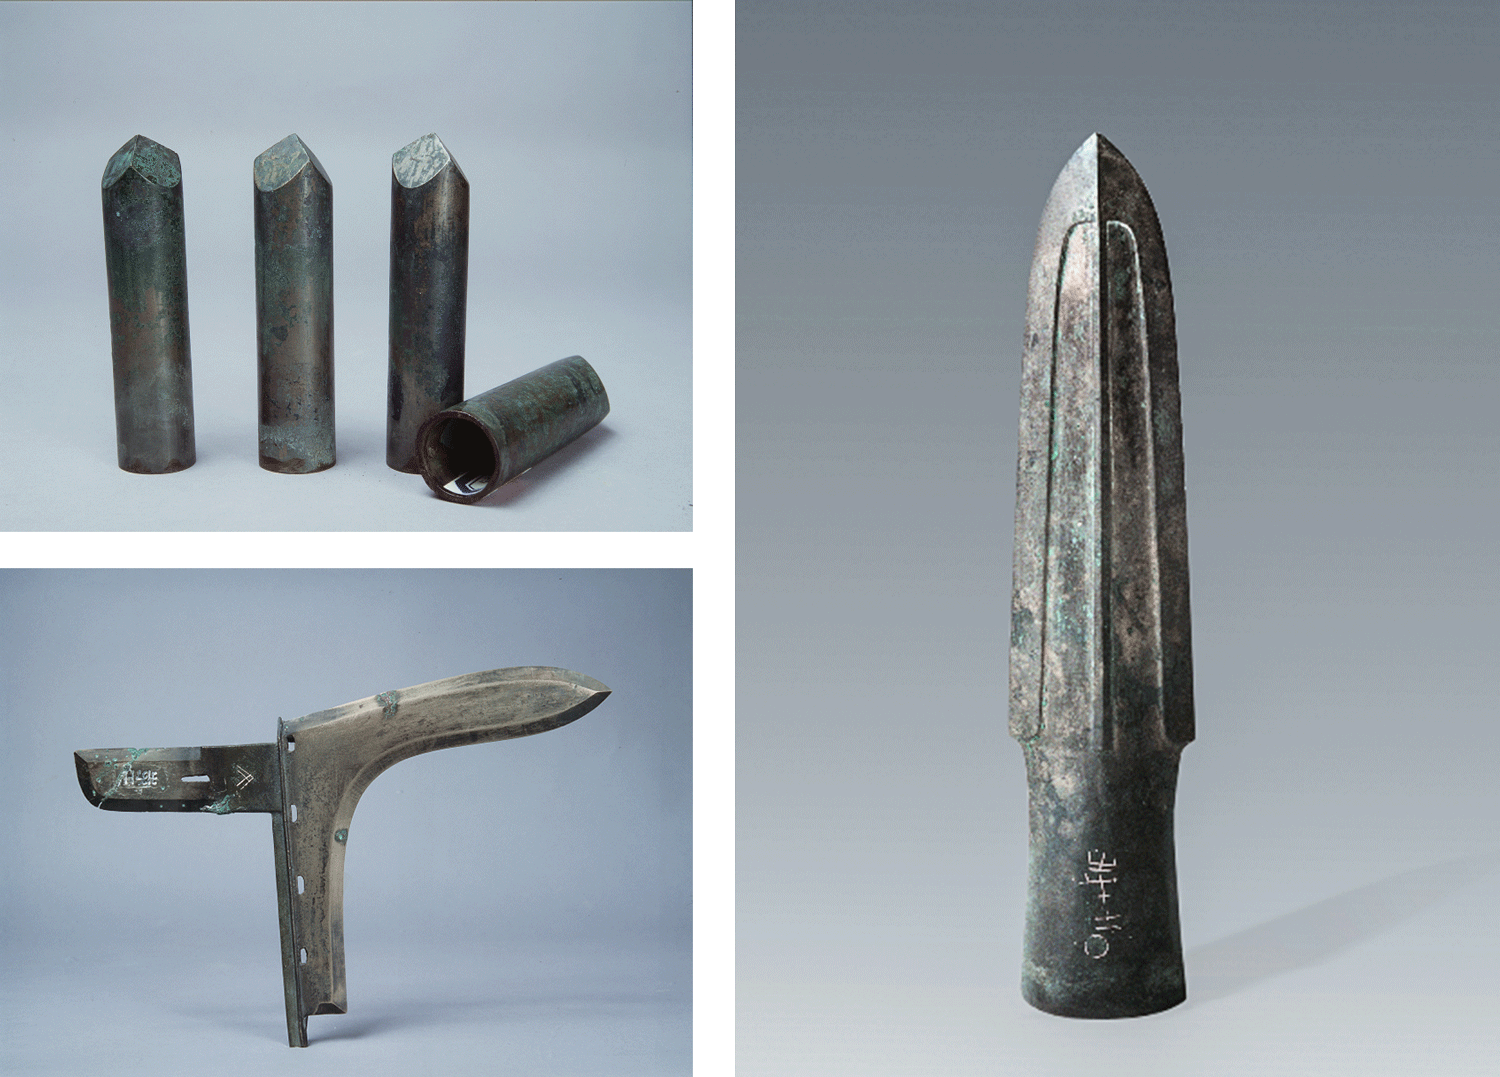 Vũ khí bằng đồng được khai quật từ Hố số 1. Ảnh: Rong Bo